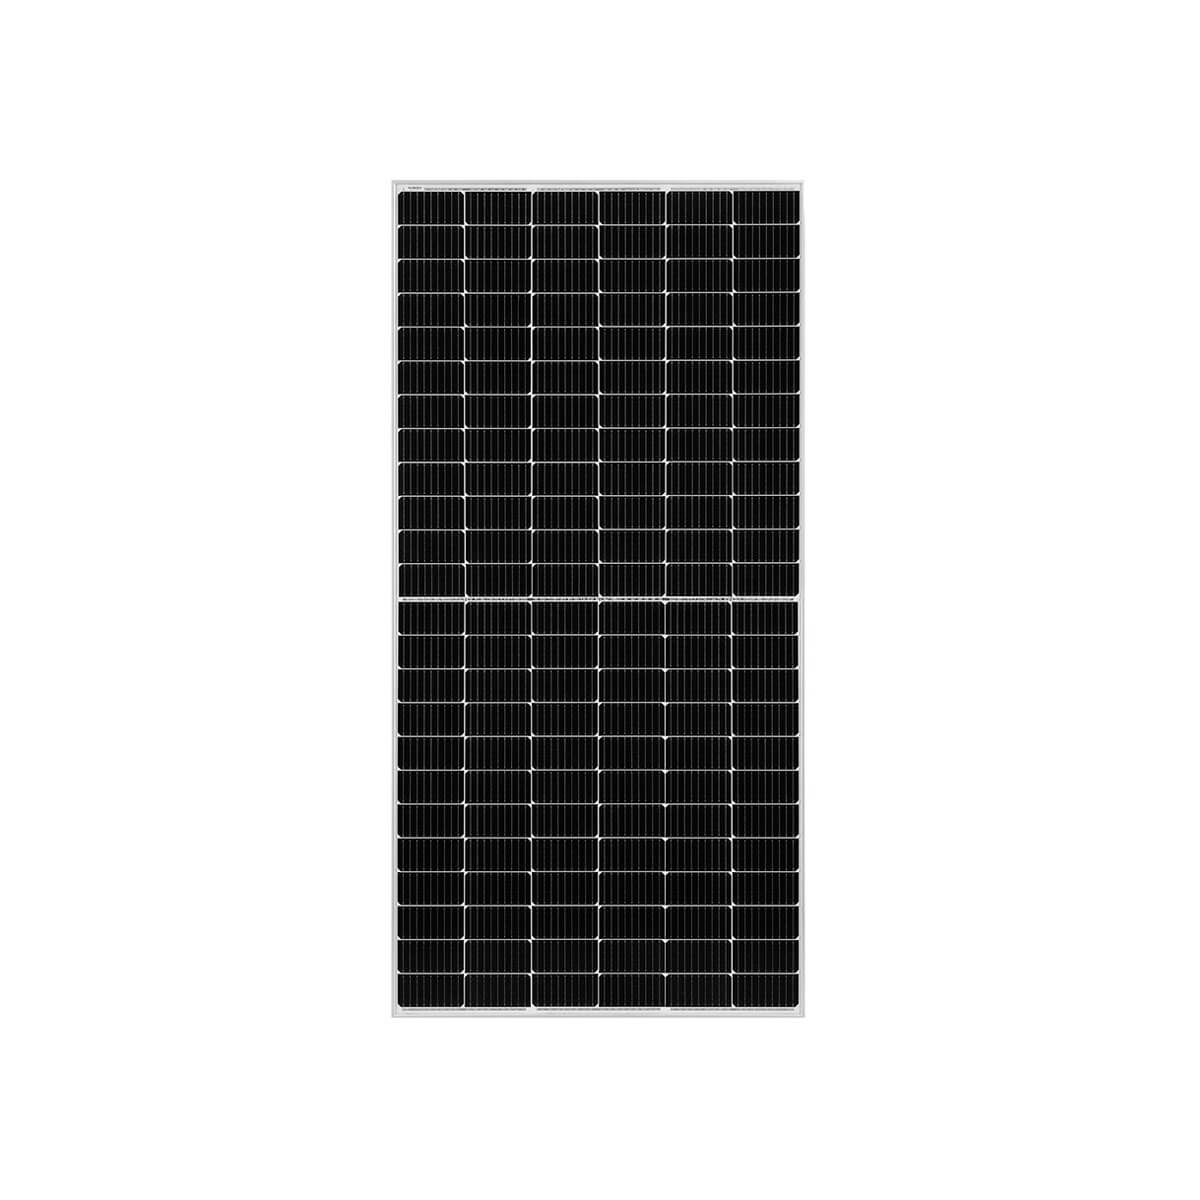 Solar Panels-530-550W-210 series-Mono-LB-pv array